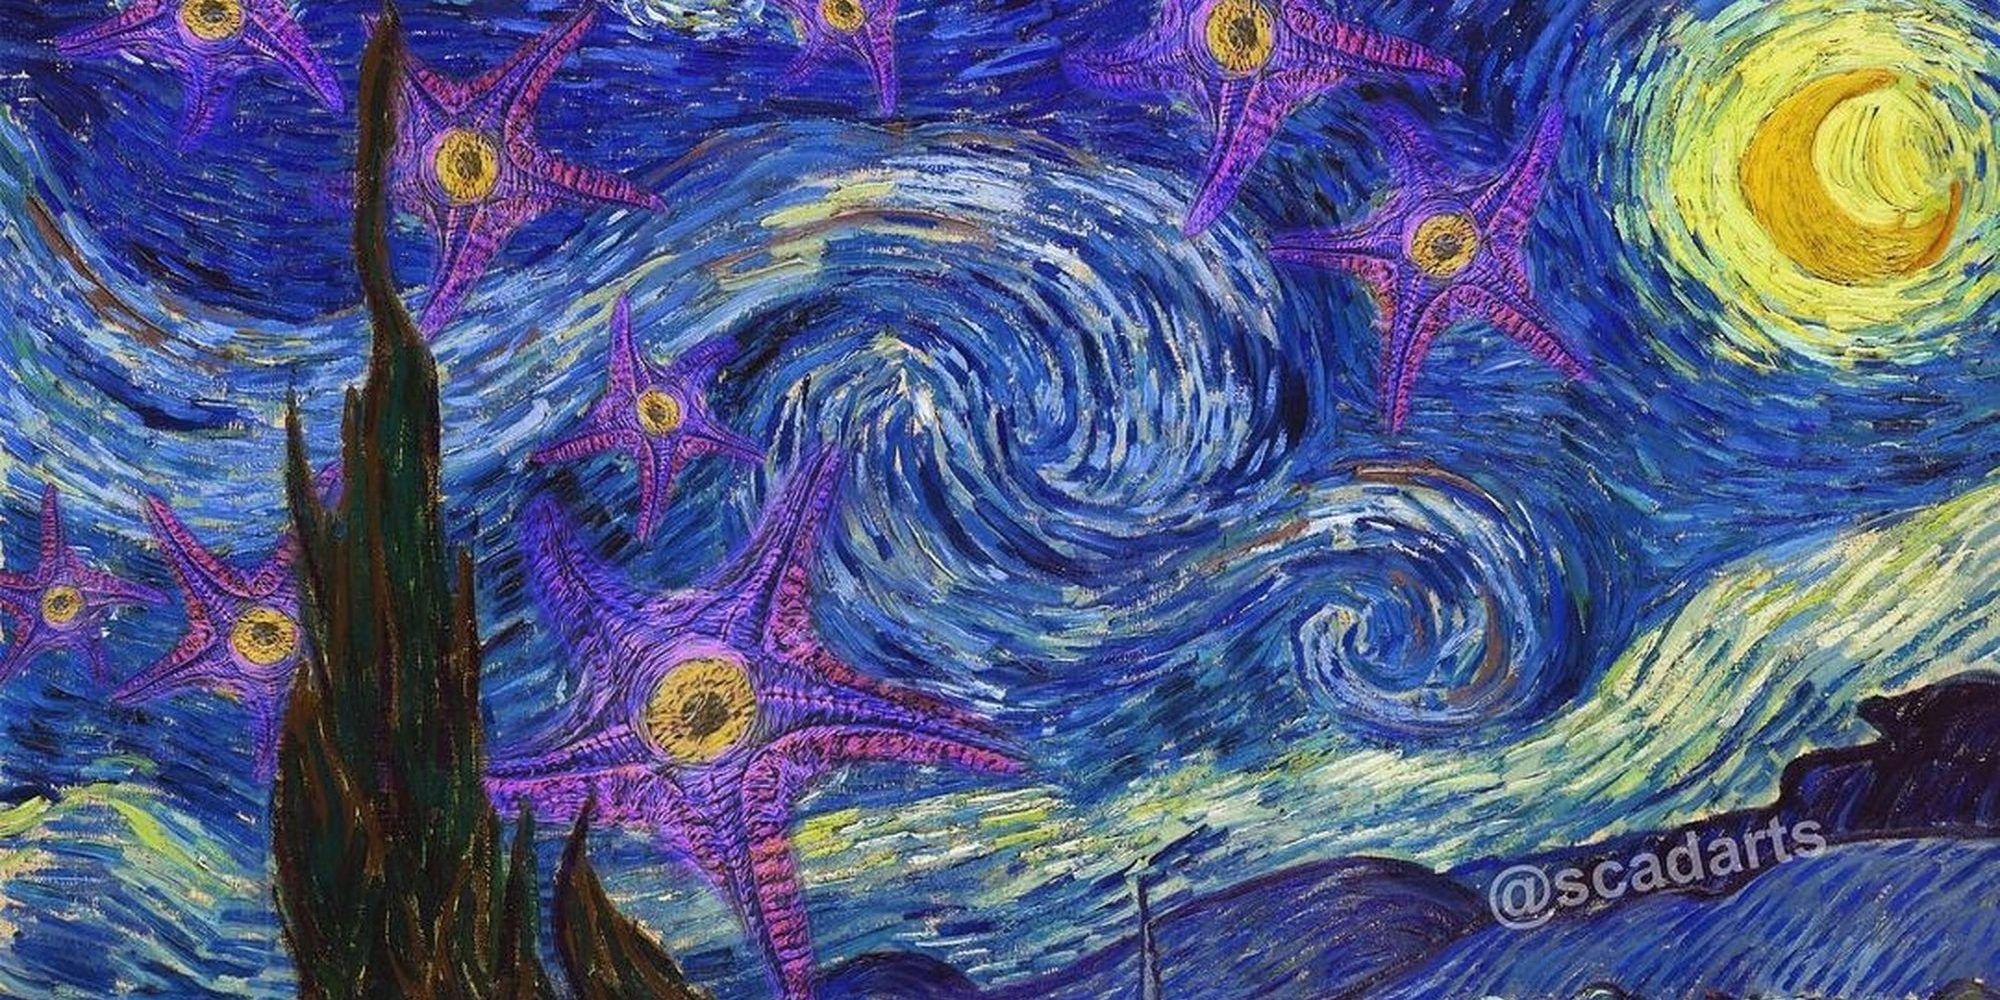 El arte de Suicide Squad mezcla a Starro con la noche estrellada de Vincent van Gogh